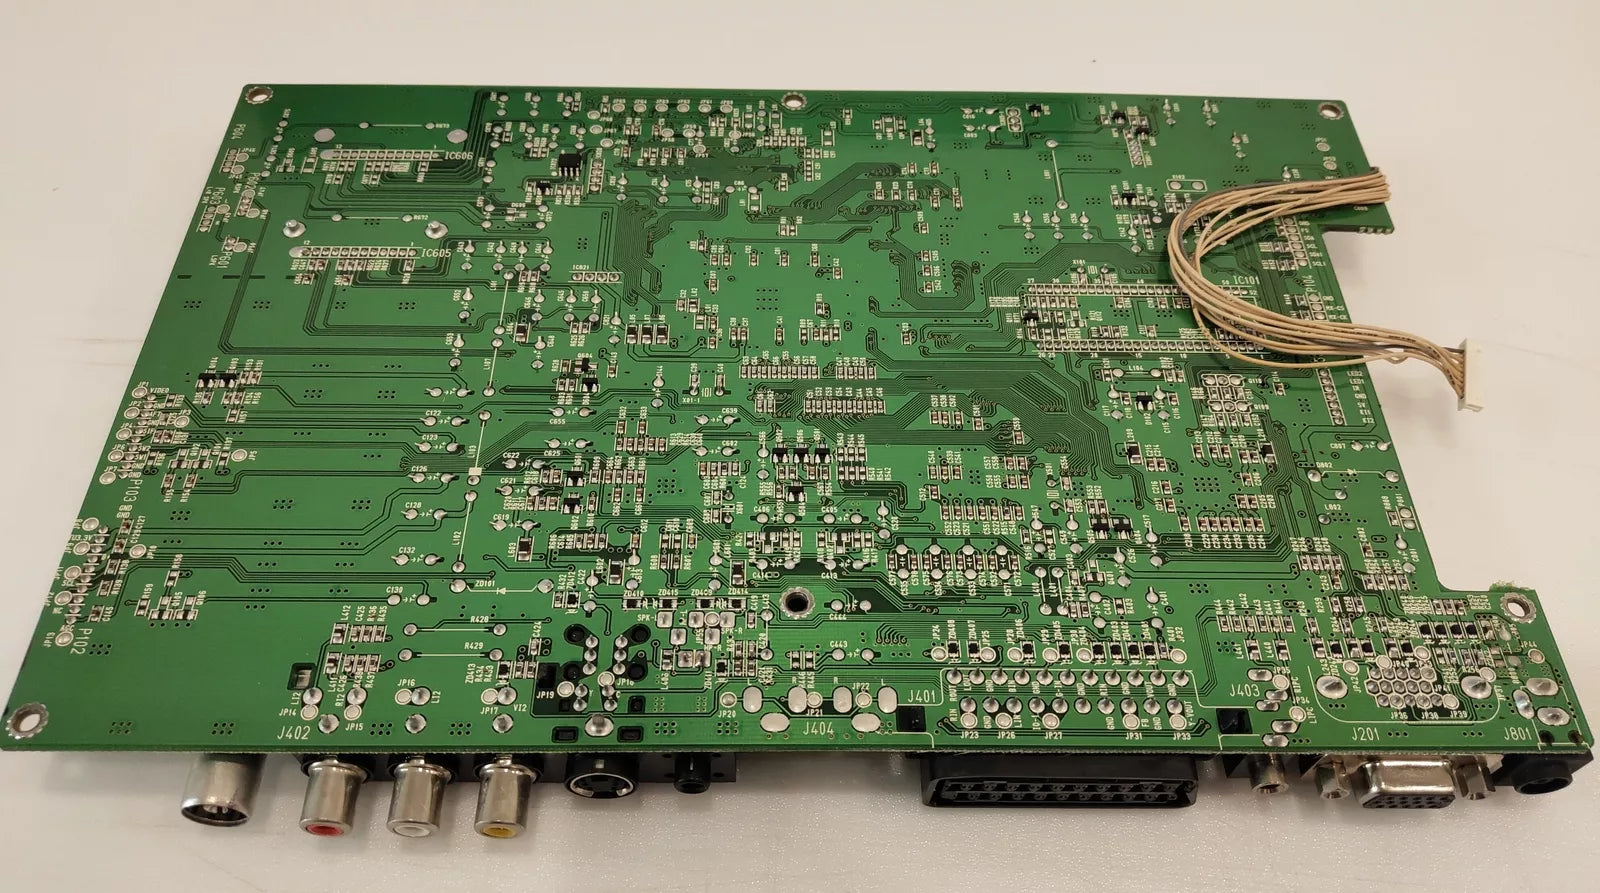 Power Board & Mainboard - 6700MF0001H (MX88L284AEC) from ELEFUNK LT-17DEP